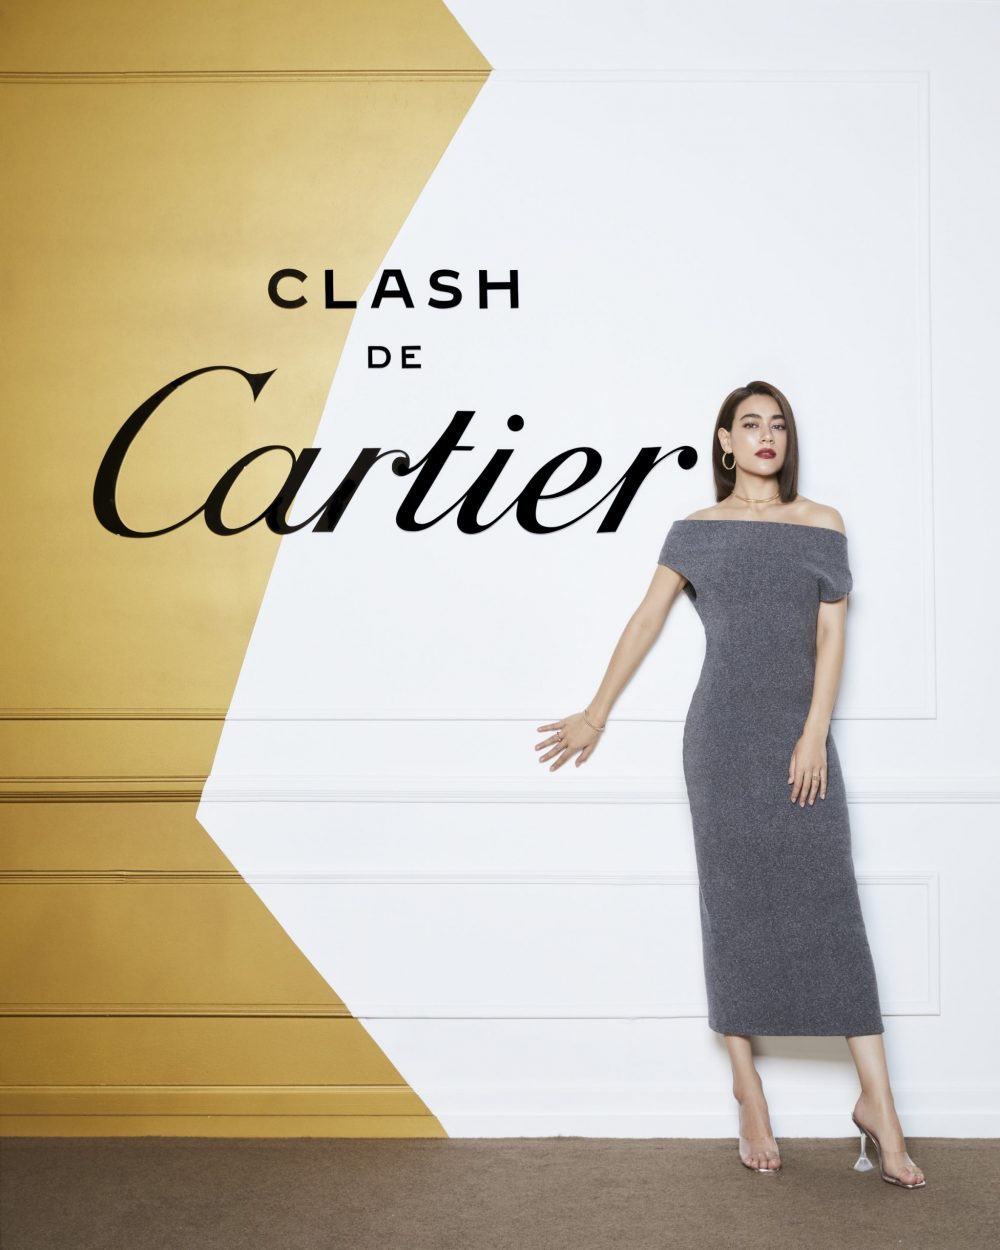 ร่วมค้นหาความงามของ Clash de Cartier เครื่องประดับสองขั้วที่ทลายทุกกฎเกณฑ์ พร้อมตามรอยแจ็กสัน หวัง และคิมเบอร์ลี่ ผ่านนิทรรศการ Clash de Cartier Pop Up Exhibition ณ สยามพารากอน